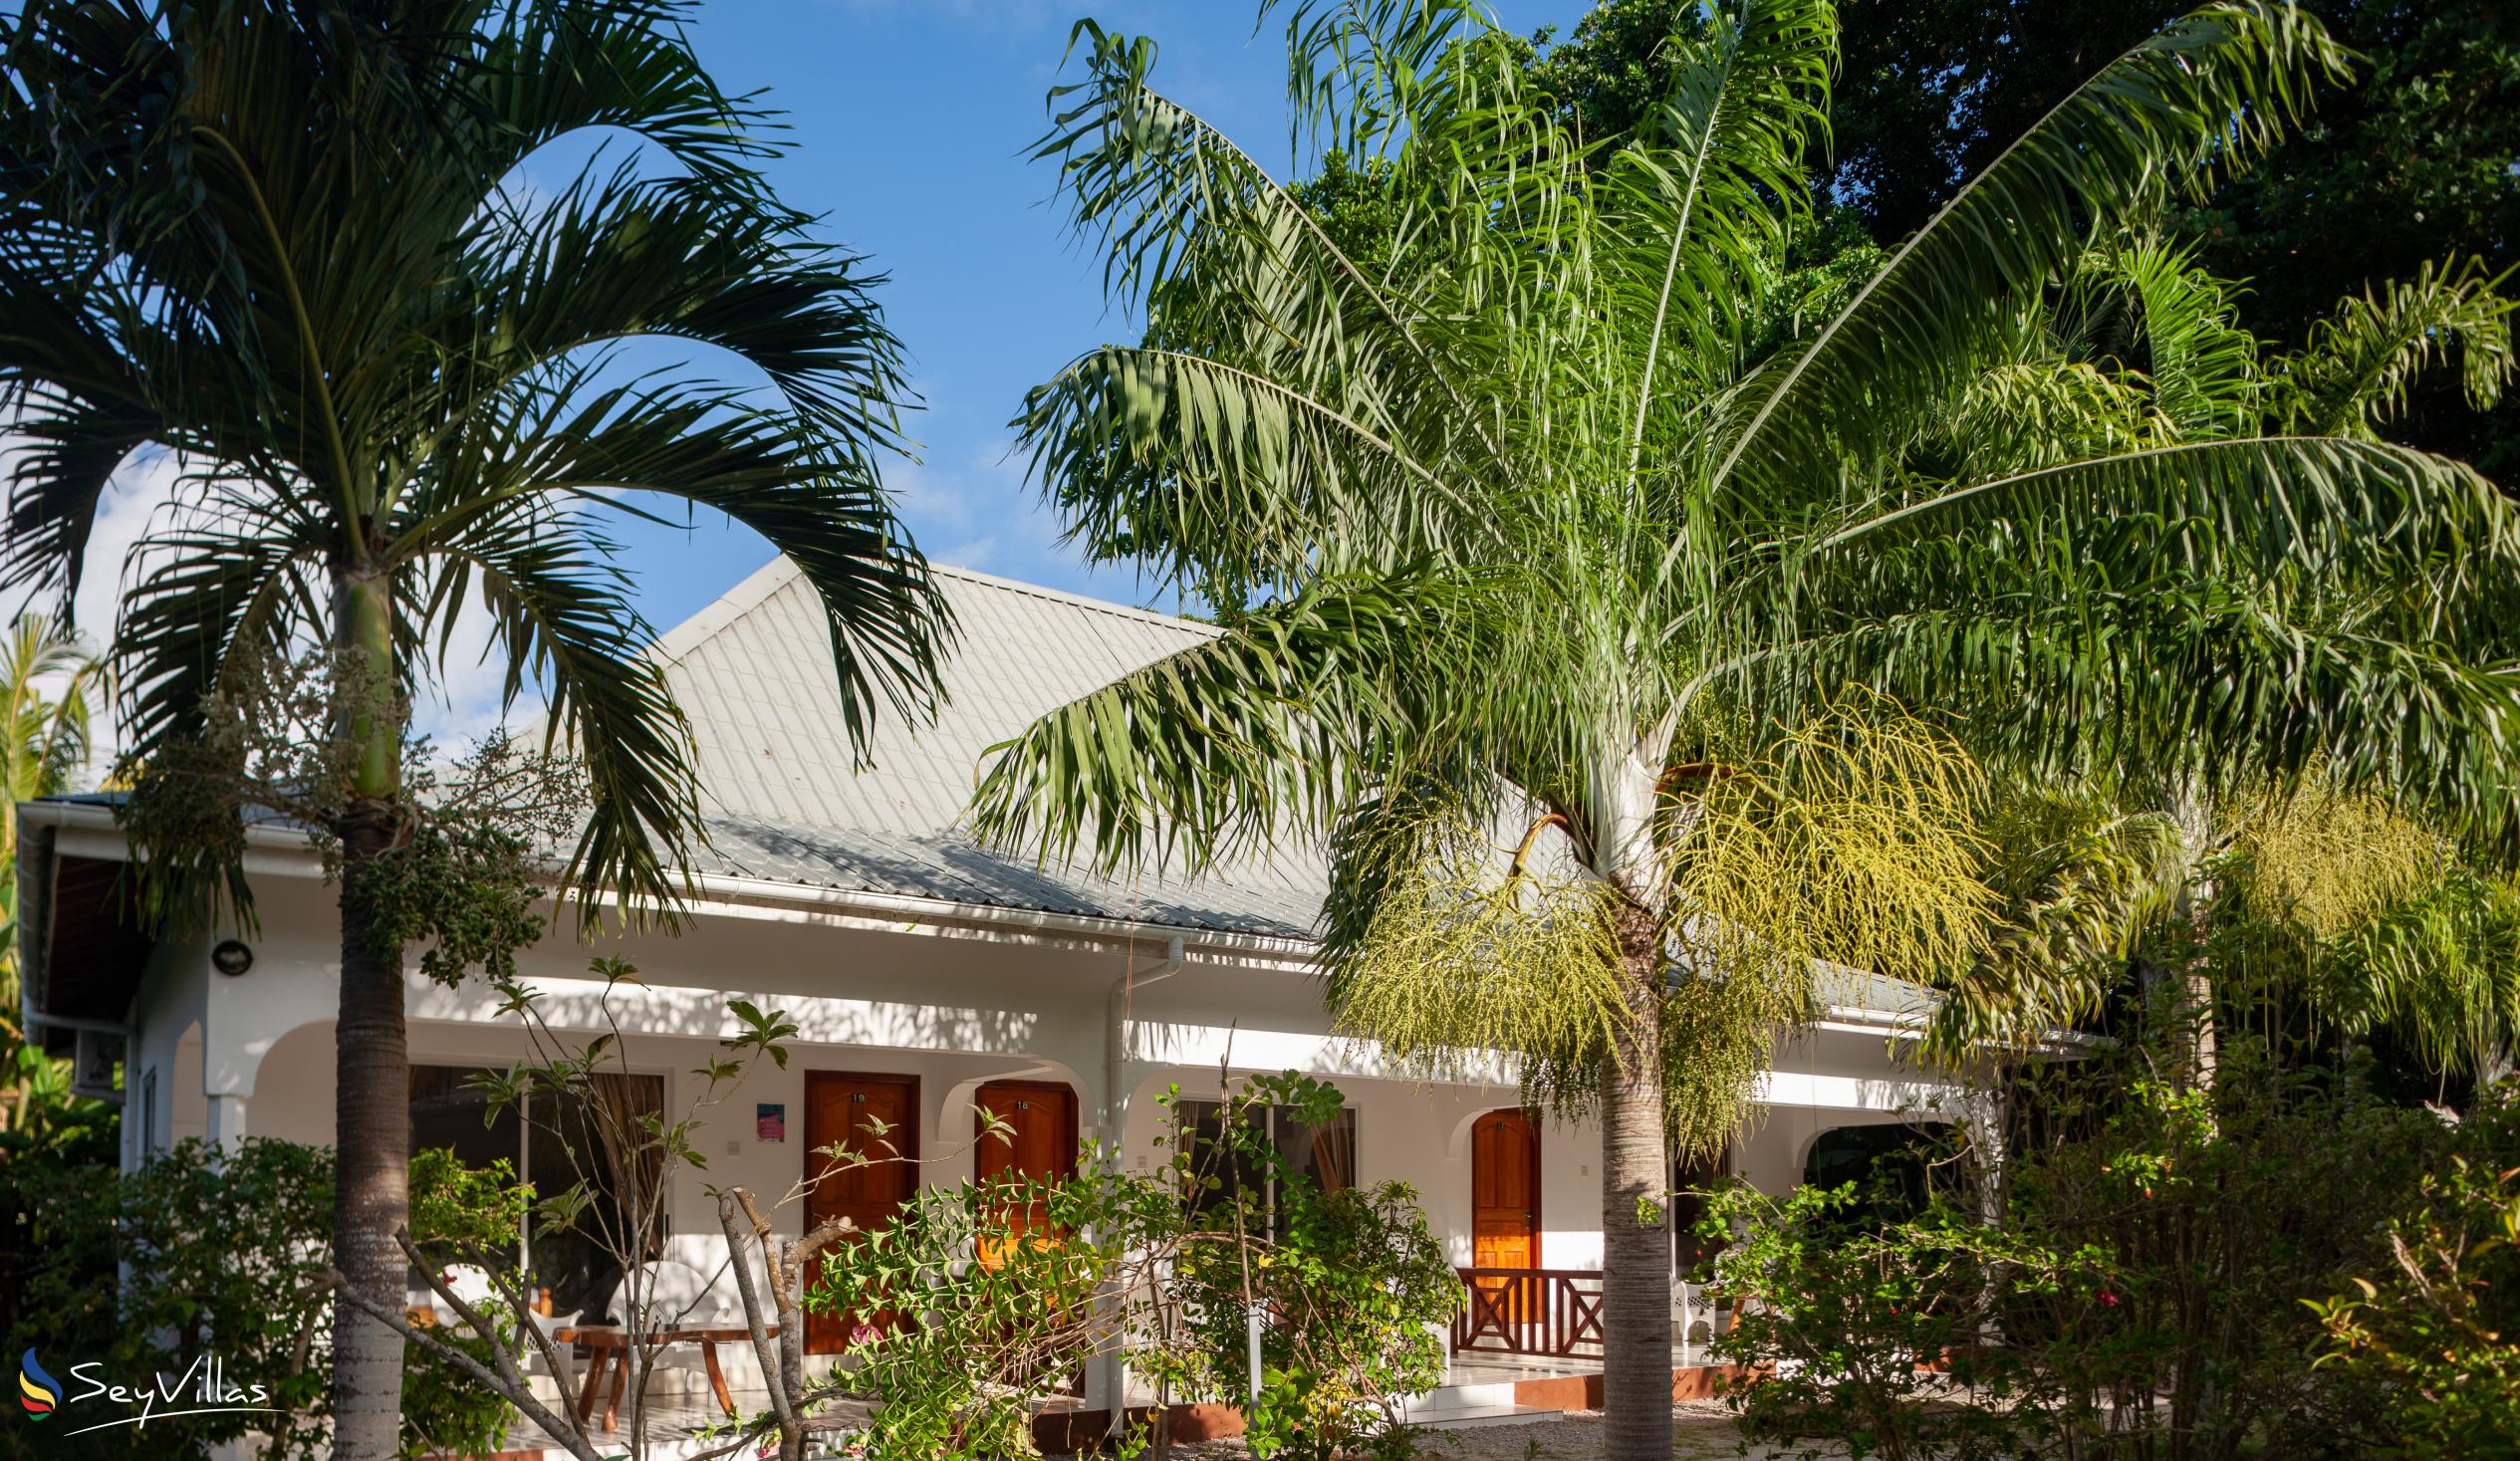 Foto 15: Villa Veuve - Aussenbereich - La Digue (Seychellen)